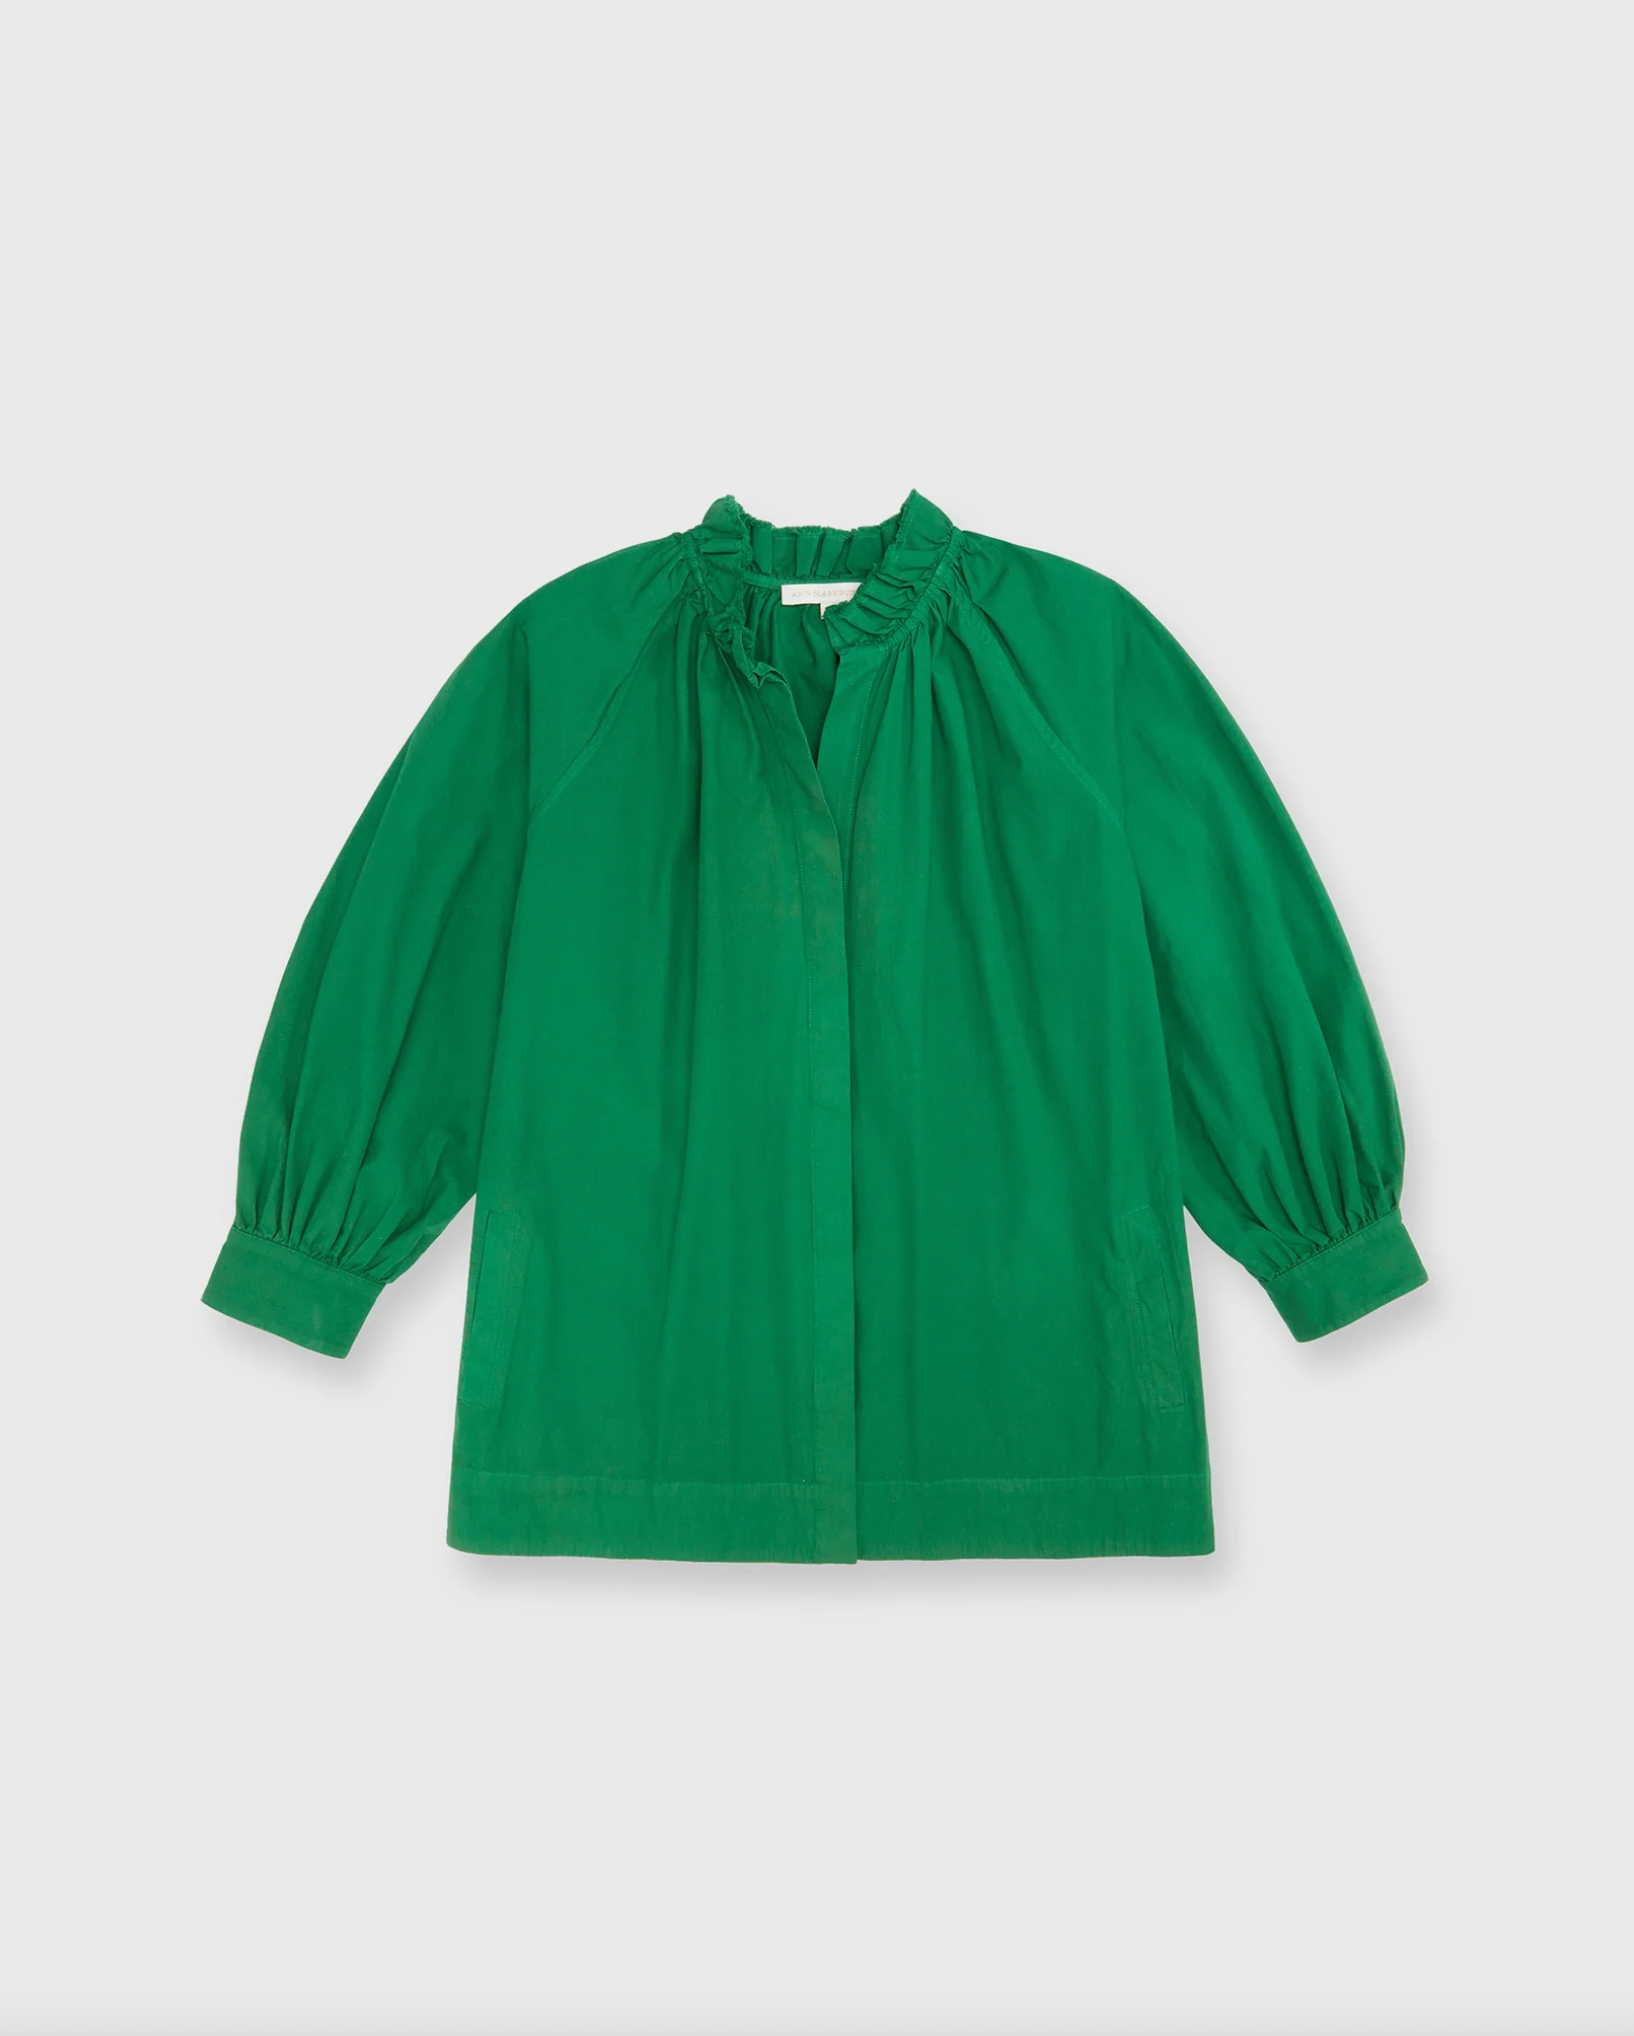 Frilla Liya Shirt Jacket - Kelly Green